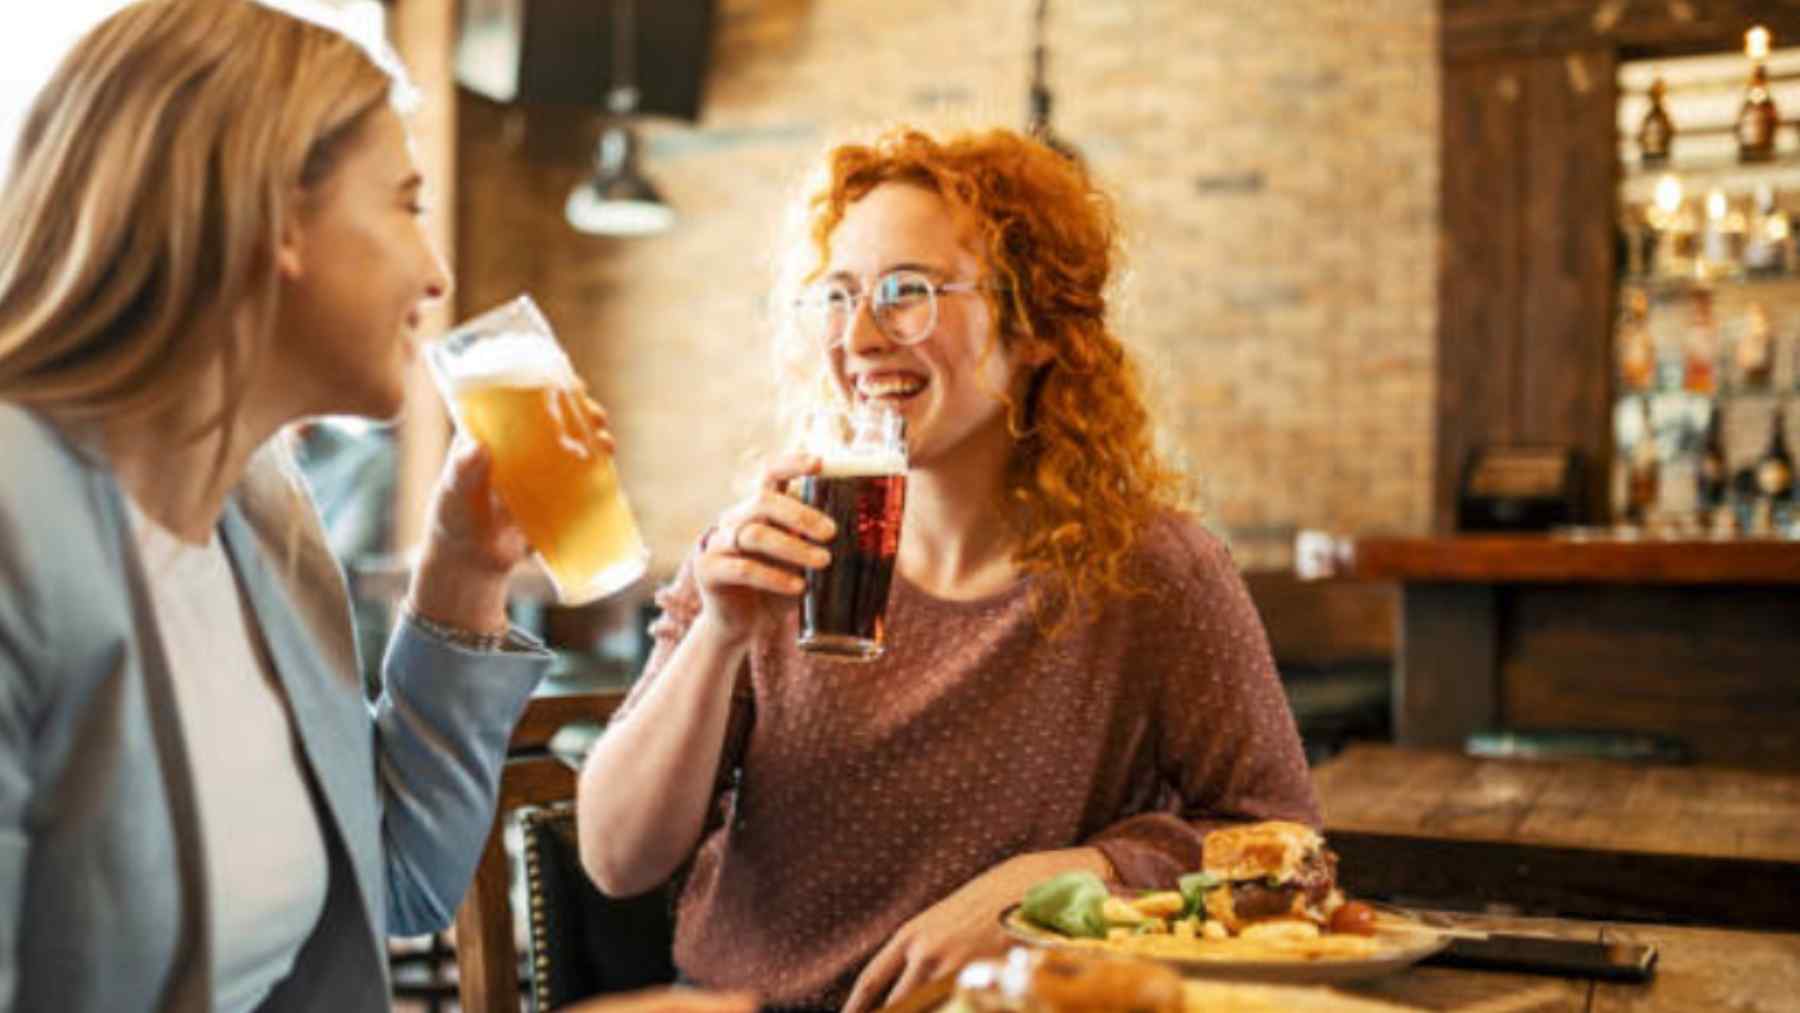 Vivir cerca de un bar tiene más riesgo para la salud, según un estudio.